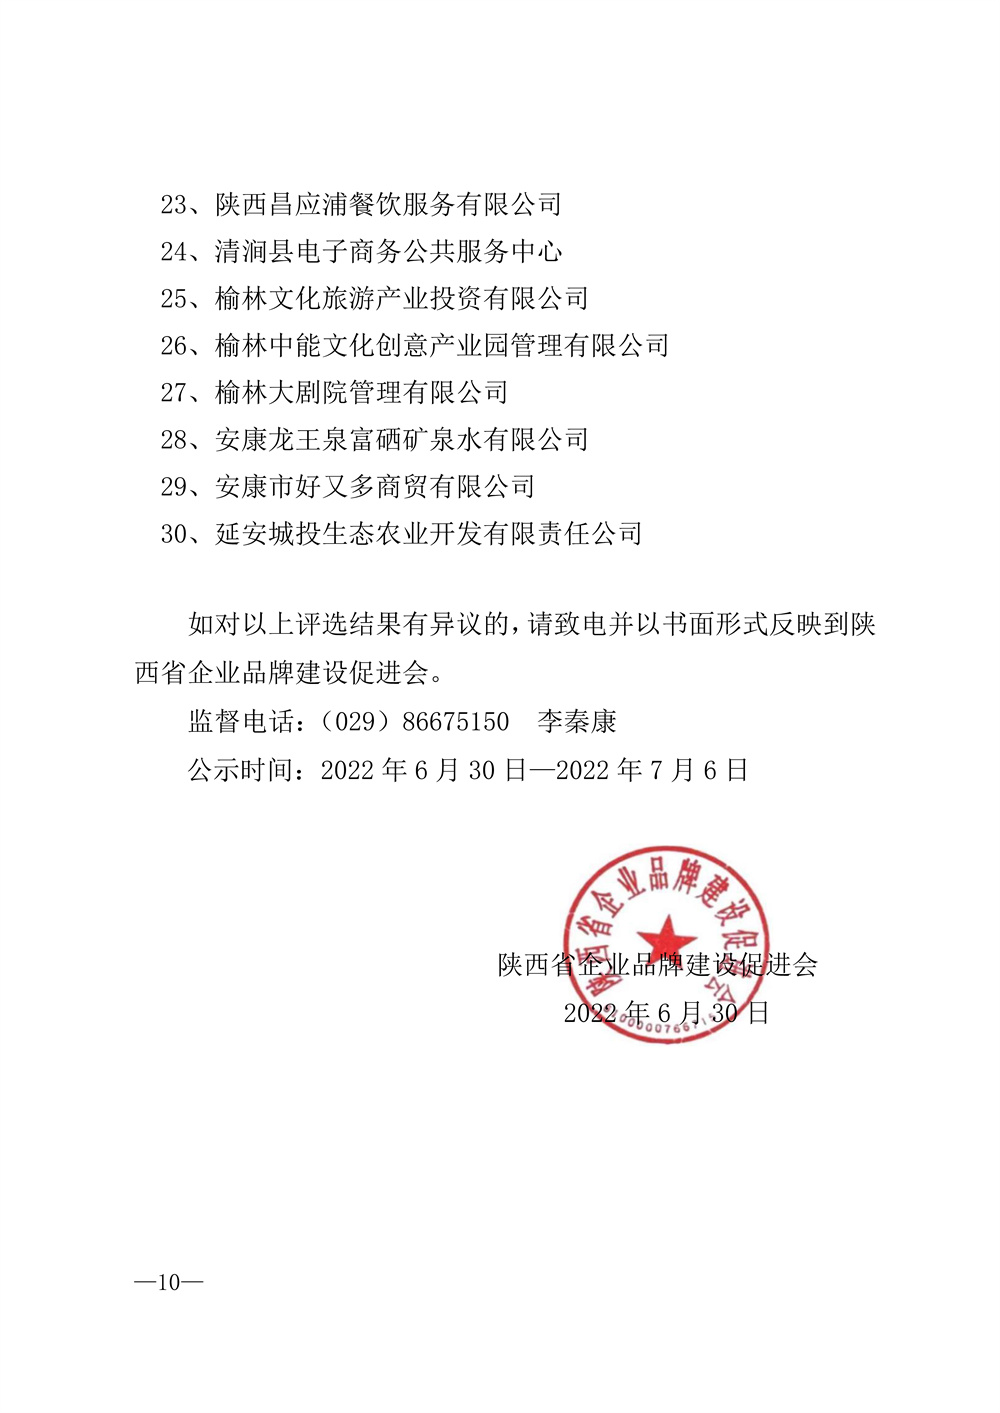 22-52陕西省2021年度品牌评选公示通知_页面_10.jpg